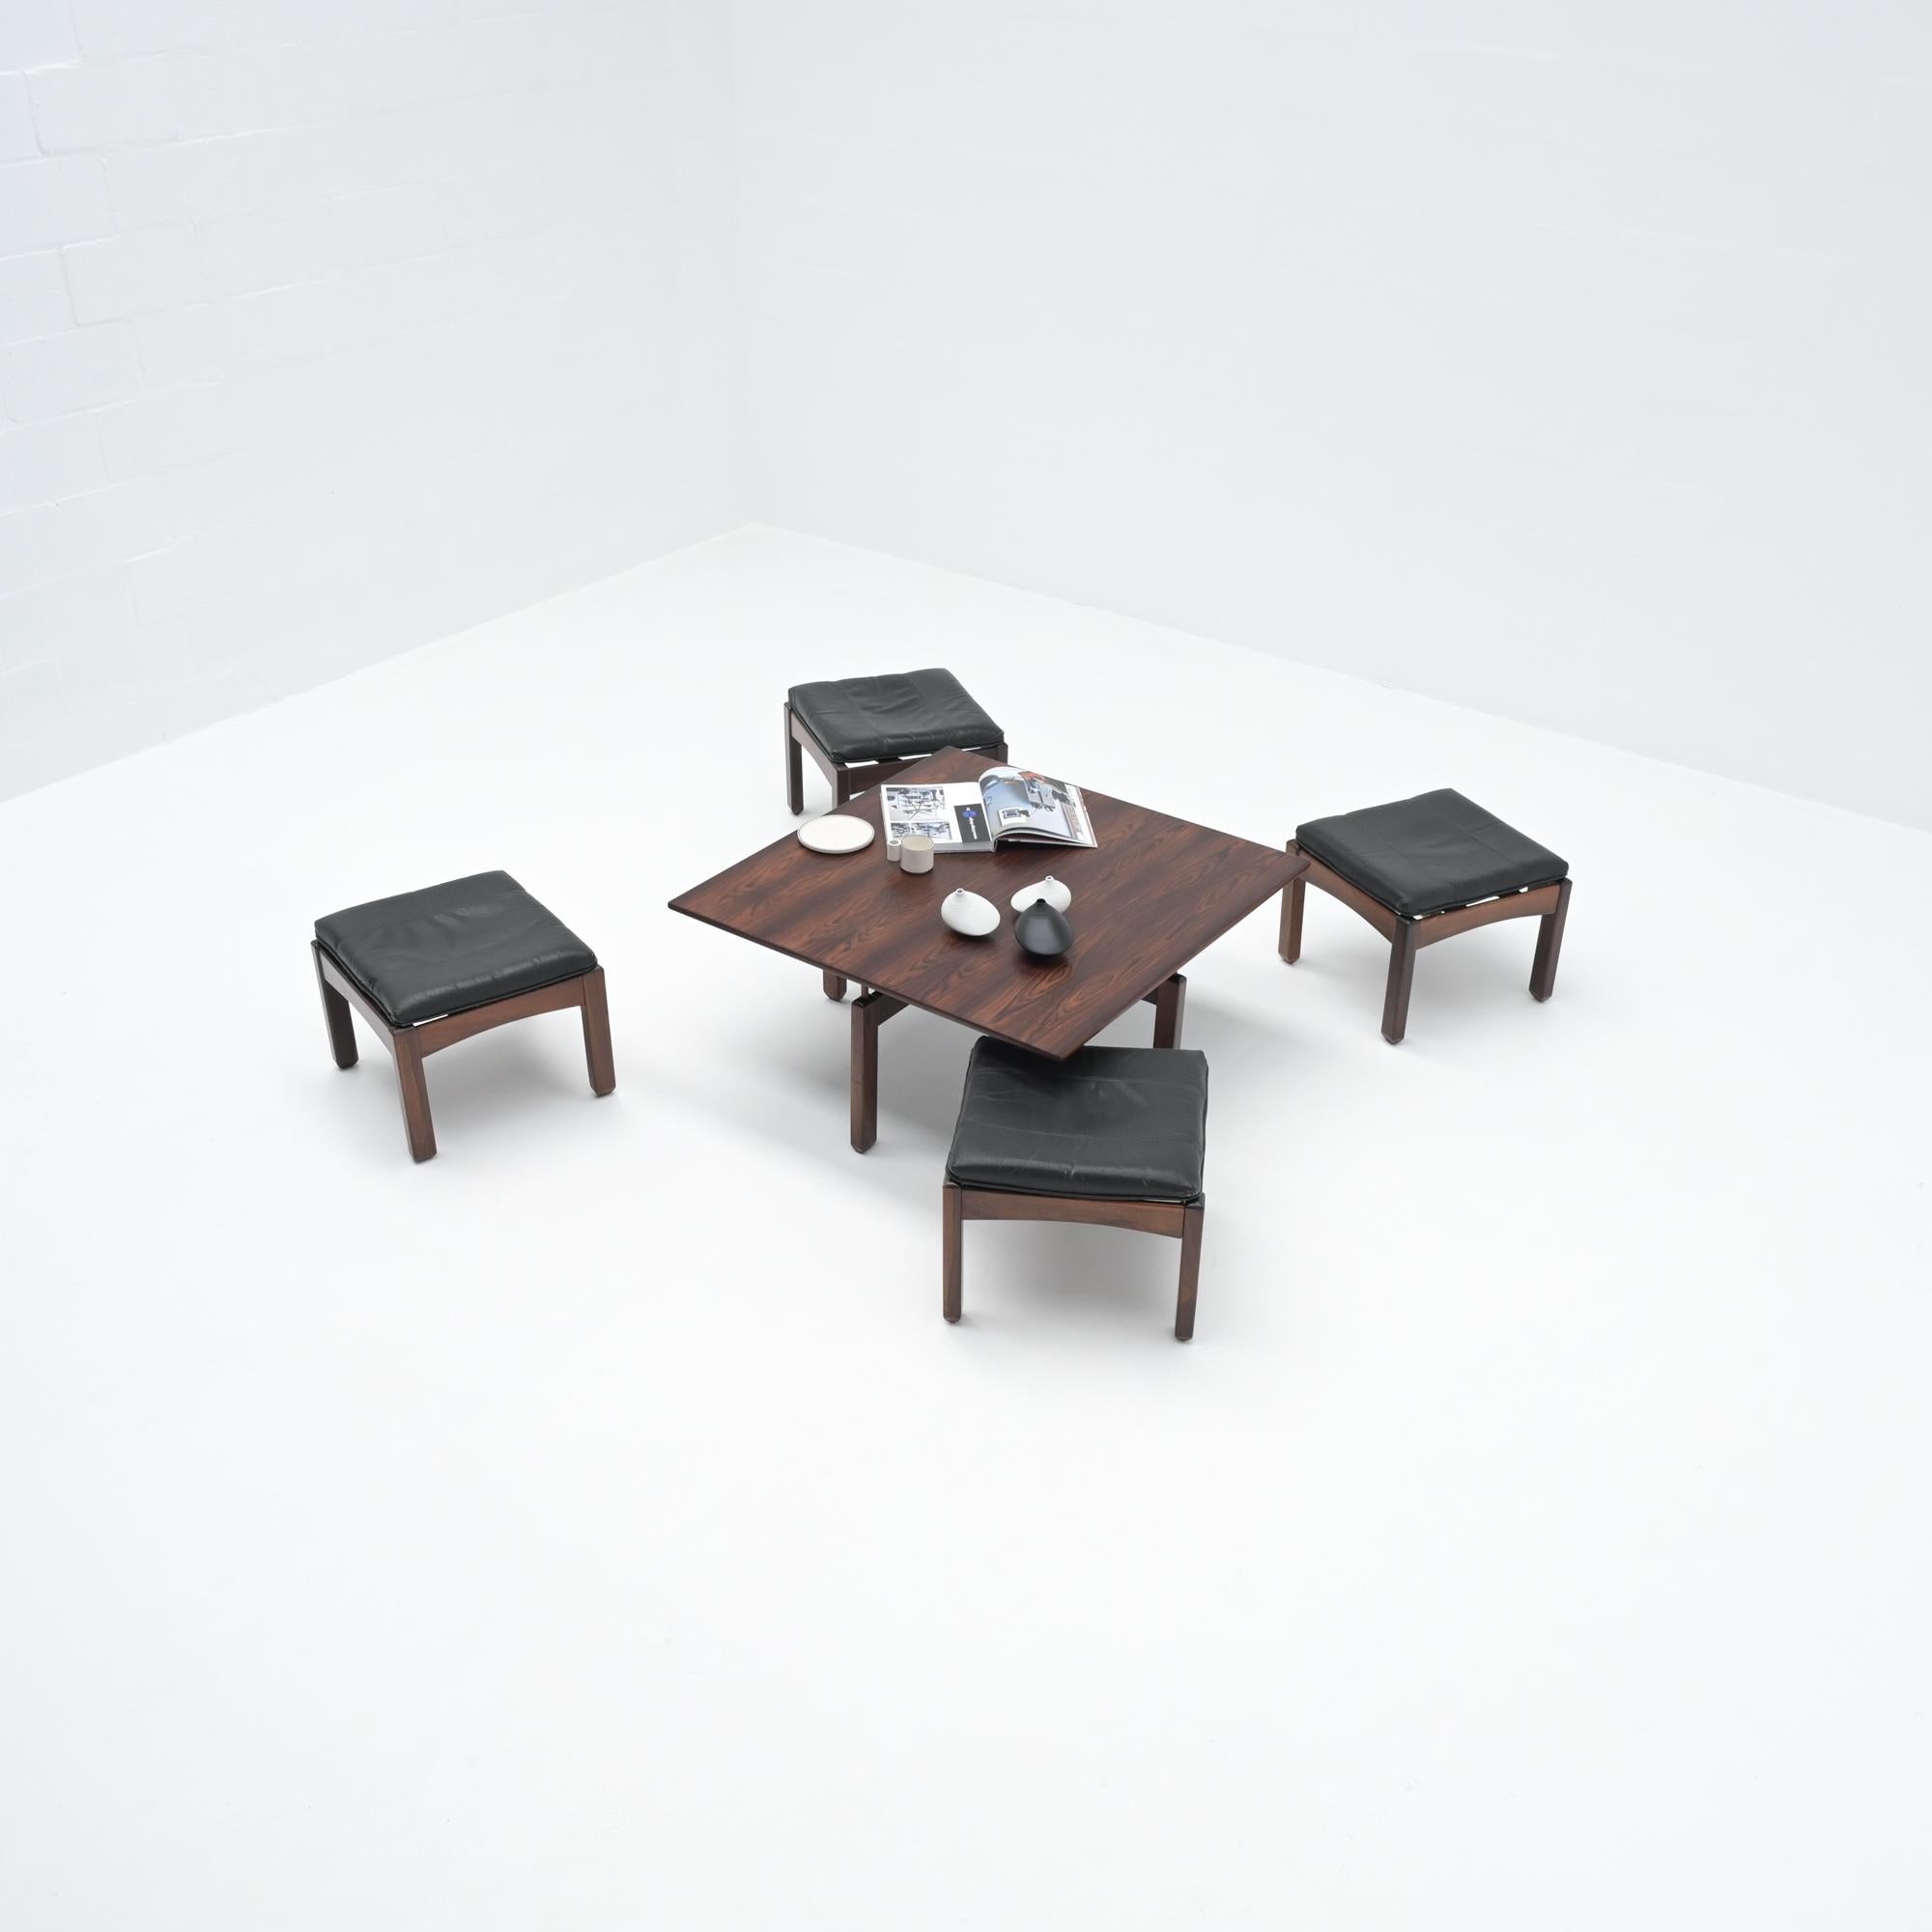 Cette élégante table basse carrée avec 4 tabourets gigognes a été conçue par Jean Gillon pour Wood Art au Brésil dans les années 1960.
La table basse est fabriquée à la main en bois de Jacaranda avec un joli motif sur le plateau. Les 4 tabourets